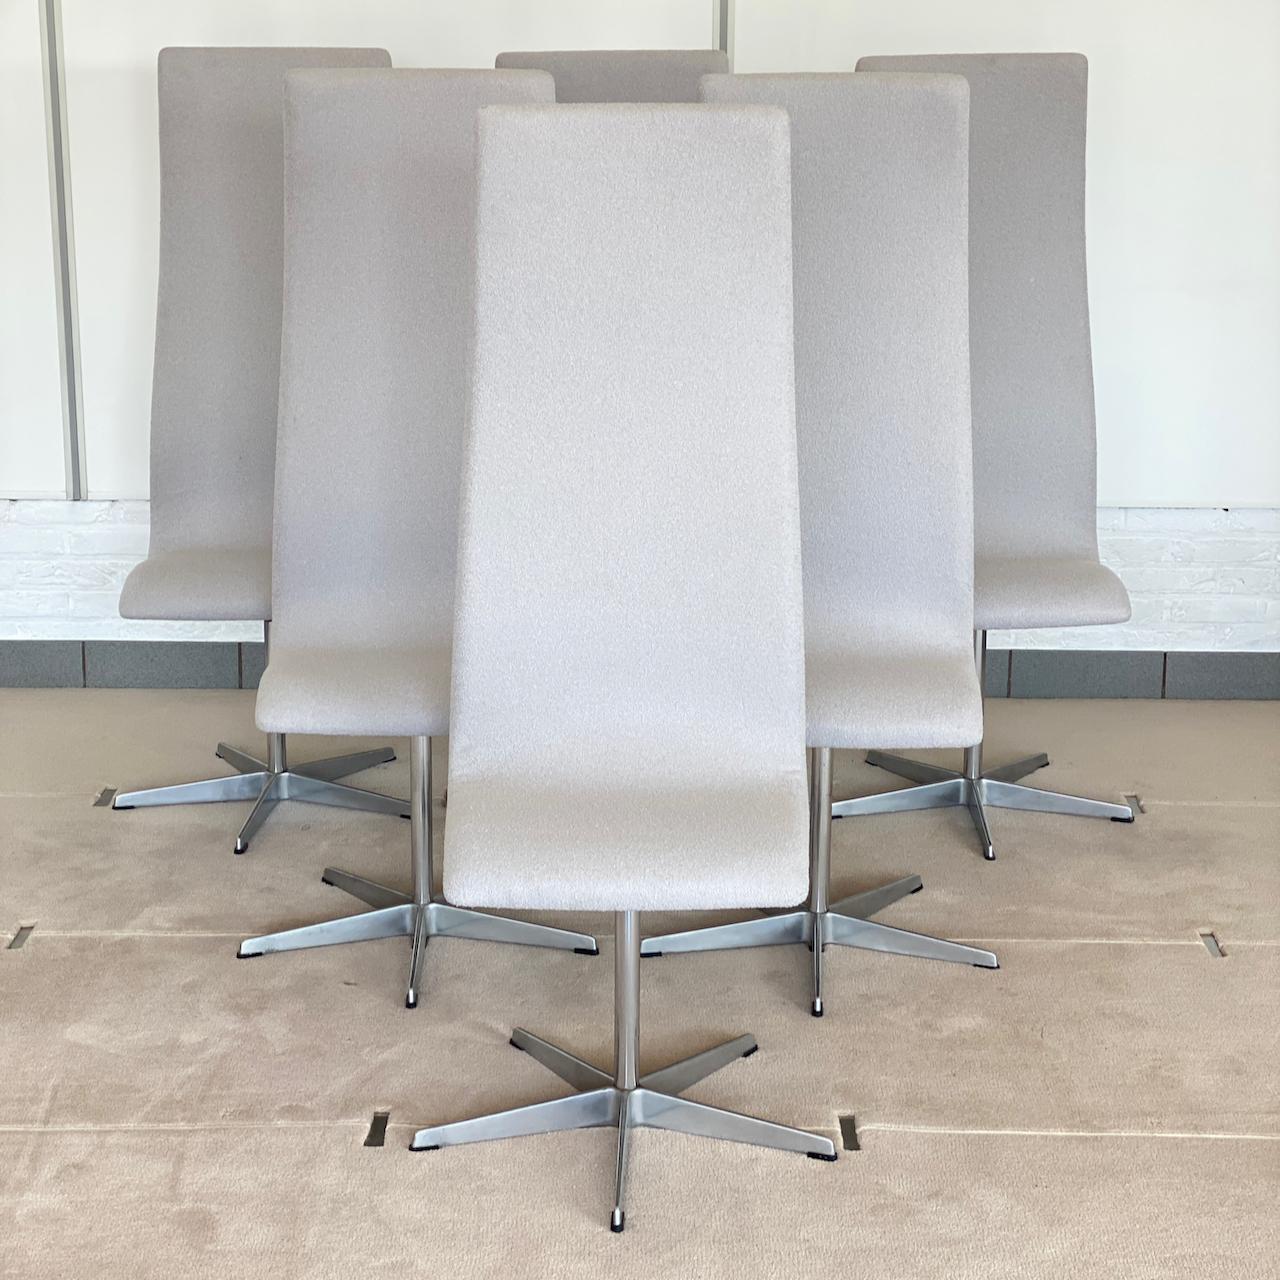 Ensemble de 6 chaises pivotantes à haut dossier sur une base en aluminium en forme d'étoile
Conçue par Arne Jacobson, célèbre designer moderne du milieu du siècle.
Ces chaises ont été commandées par le Collège d'Oxford au Royaume-Uni pour leurs